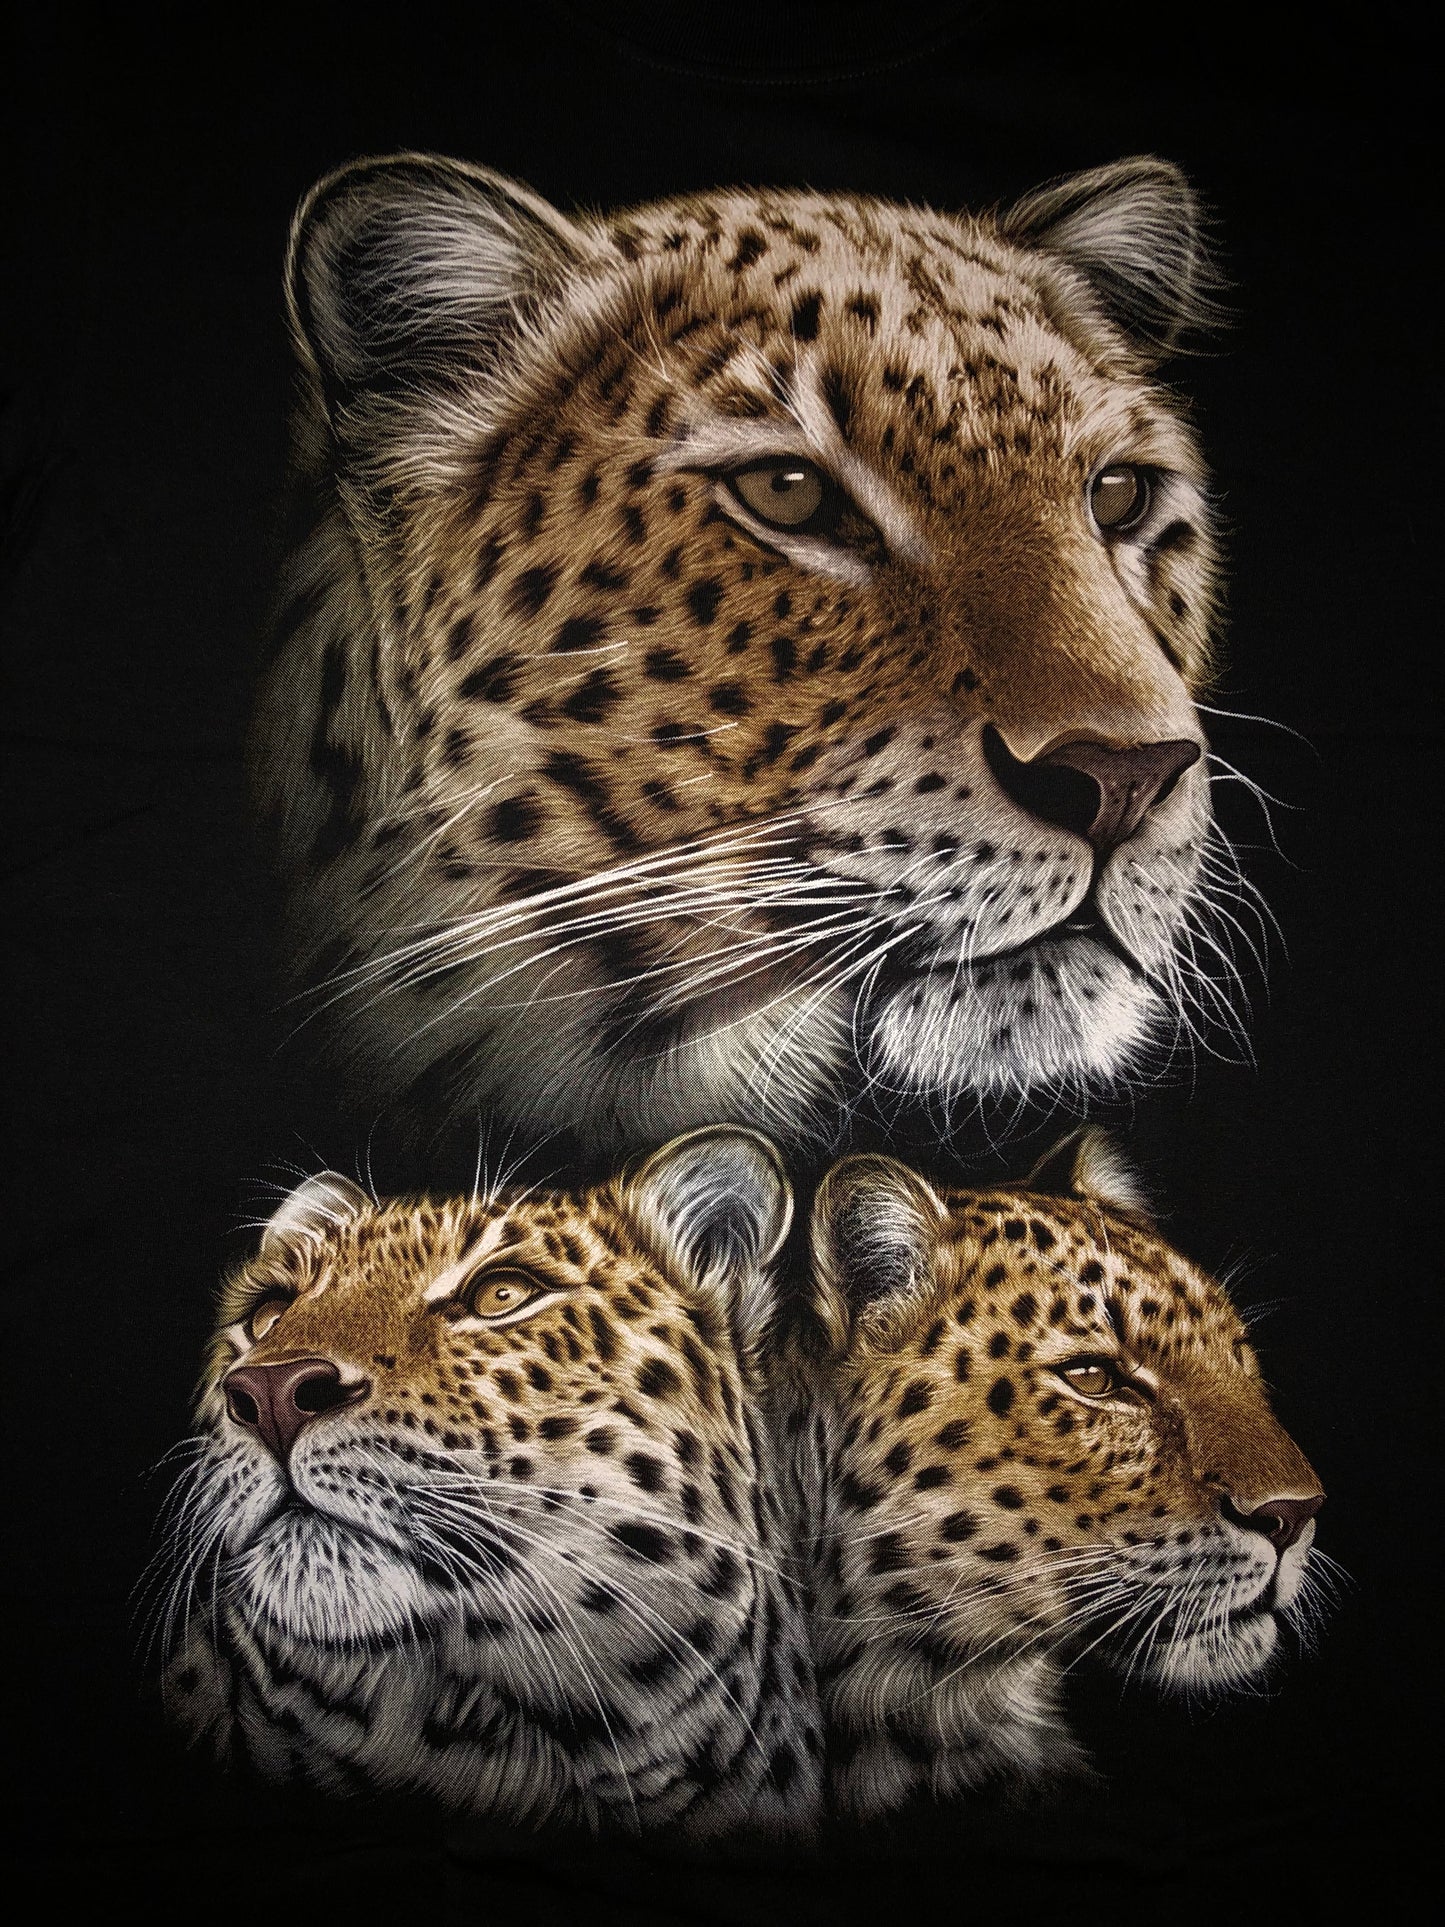 Leopard - Faces